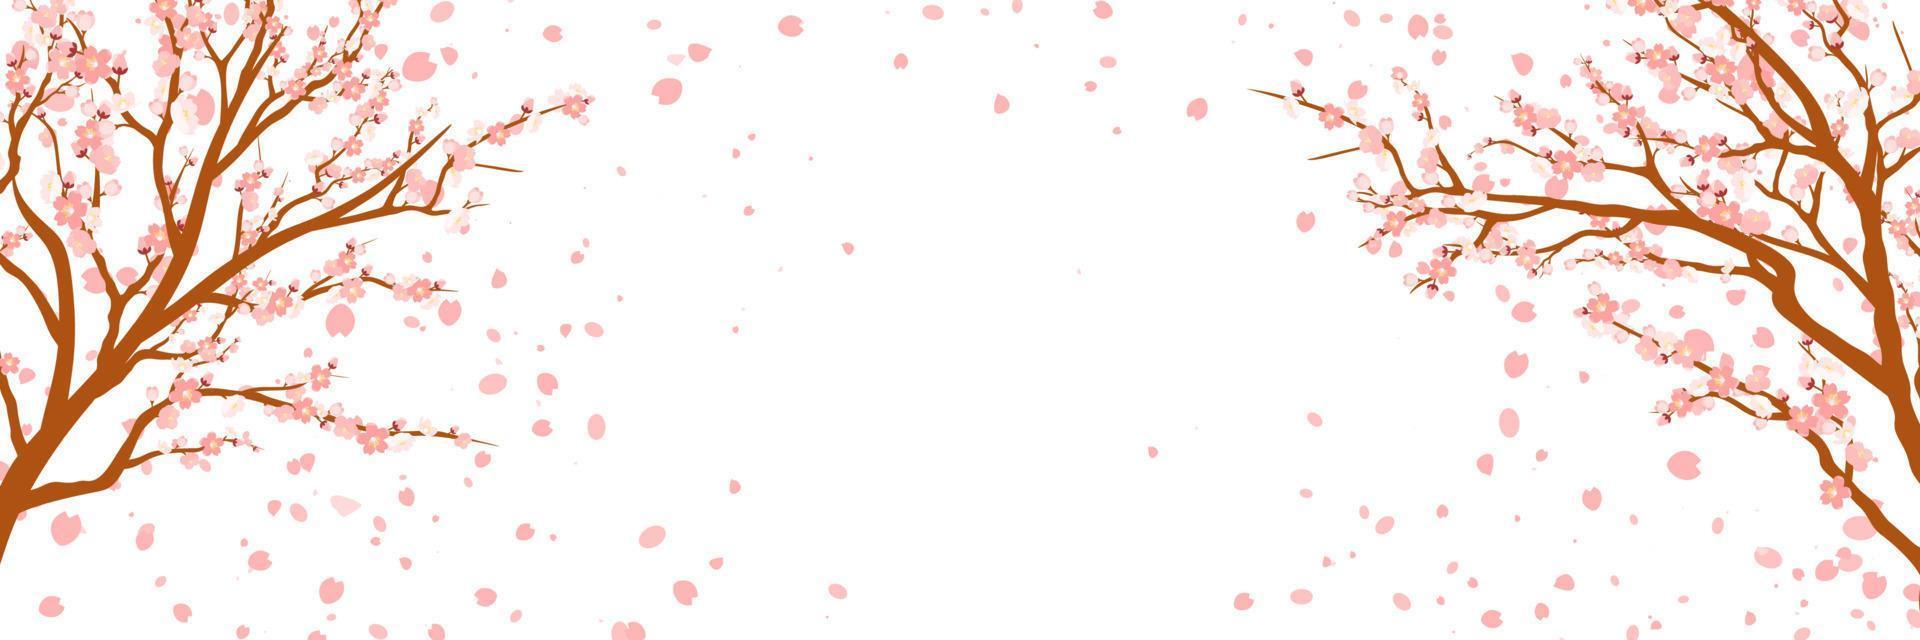 Zweige mit rosa Blüten und Kirschknospen. Sakura. Blütenblätter fliegen im Wind. isoliert auf weißem Hintergrund. Vektor-Illustration. vektor